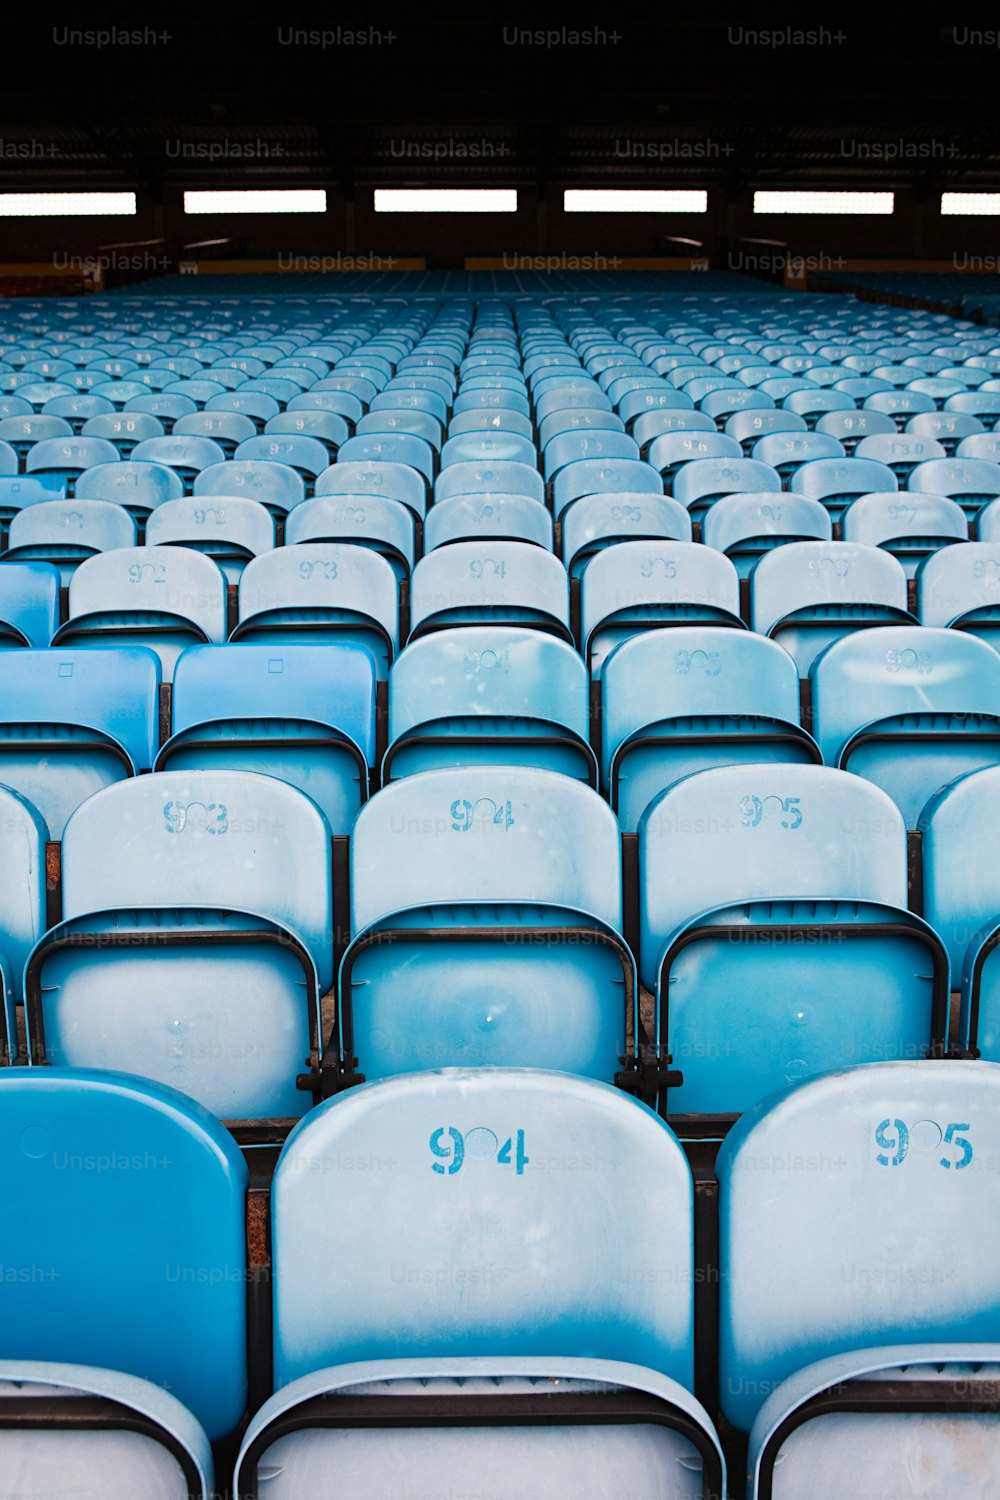 경기장에 파란색과 흰색 좌석이 �줄지어 있습니다